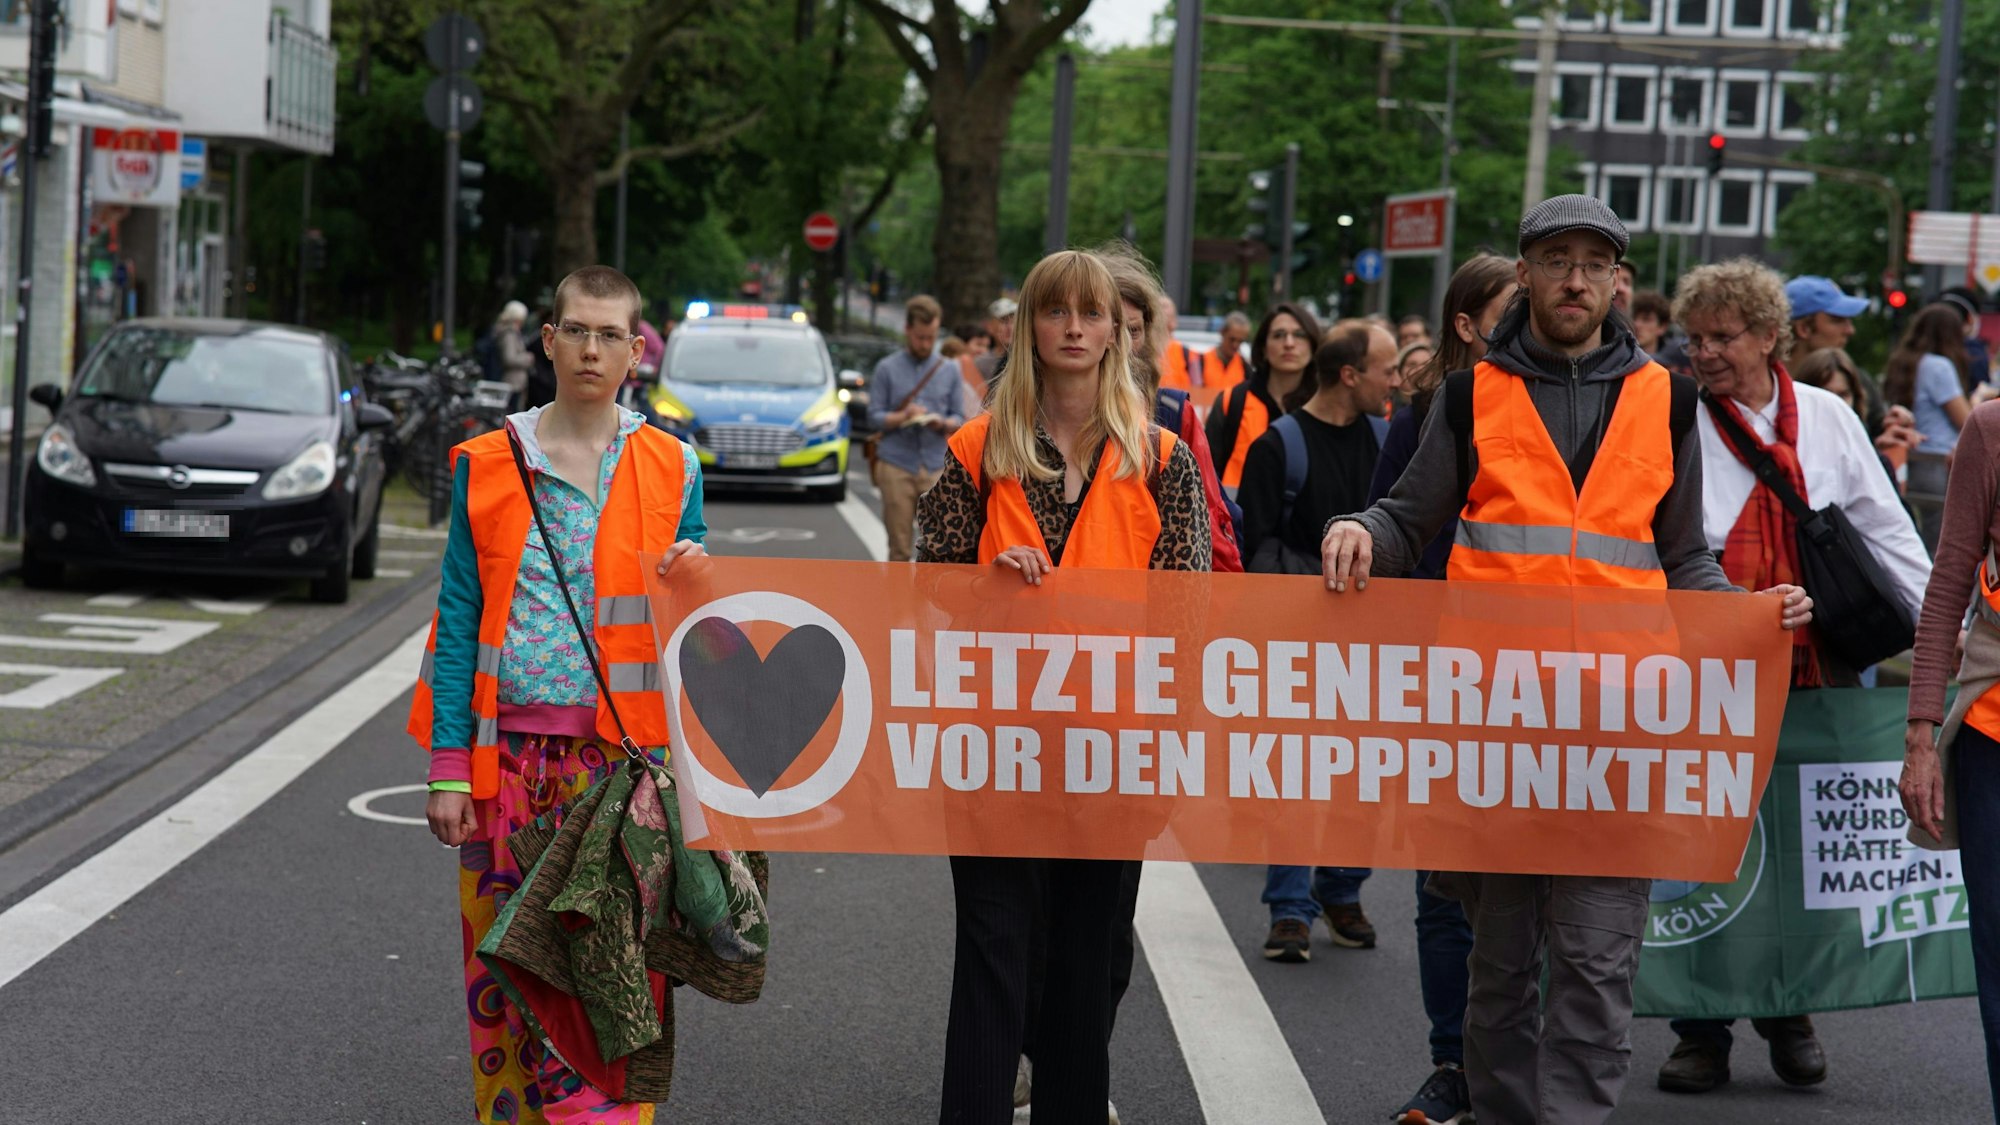 Demonstranten der Letzten Generation laufen eine Straße entlang und halten ein Transparent hoch.